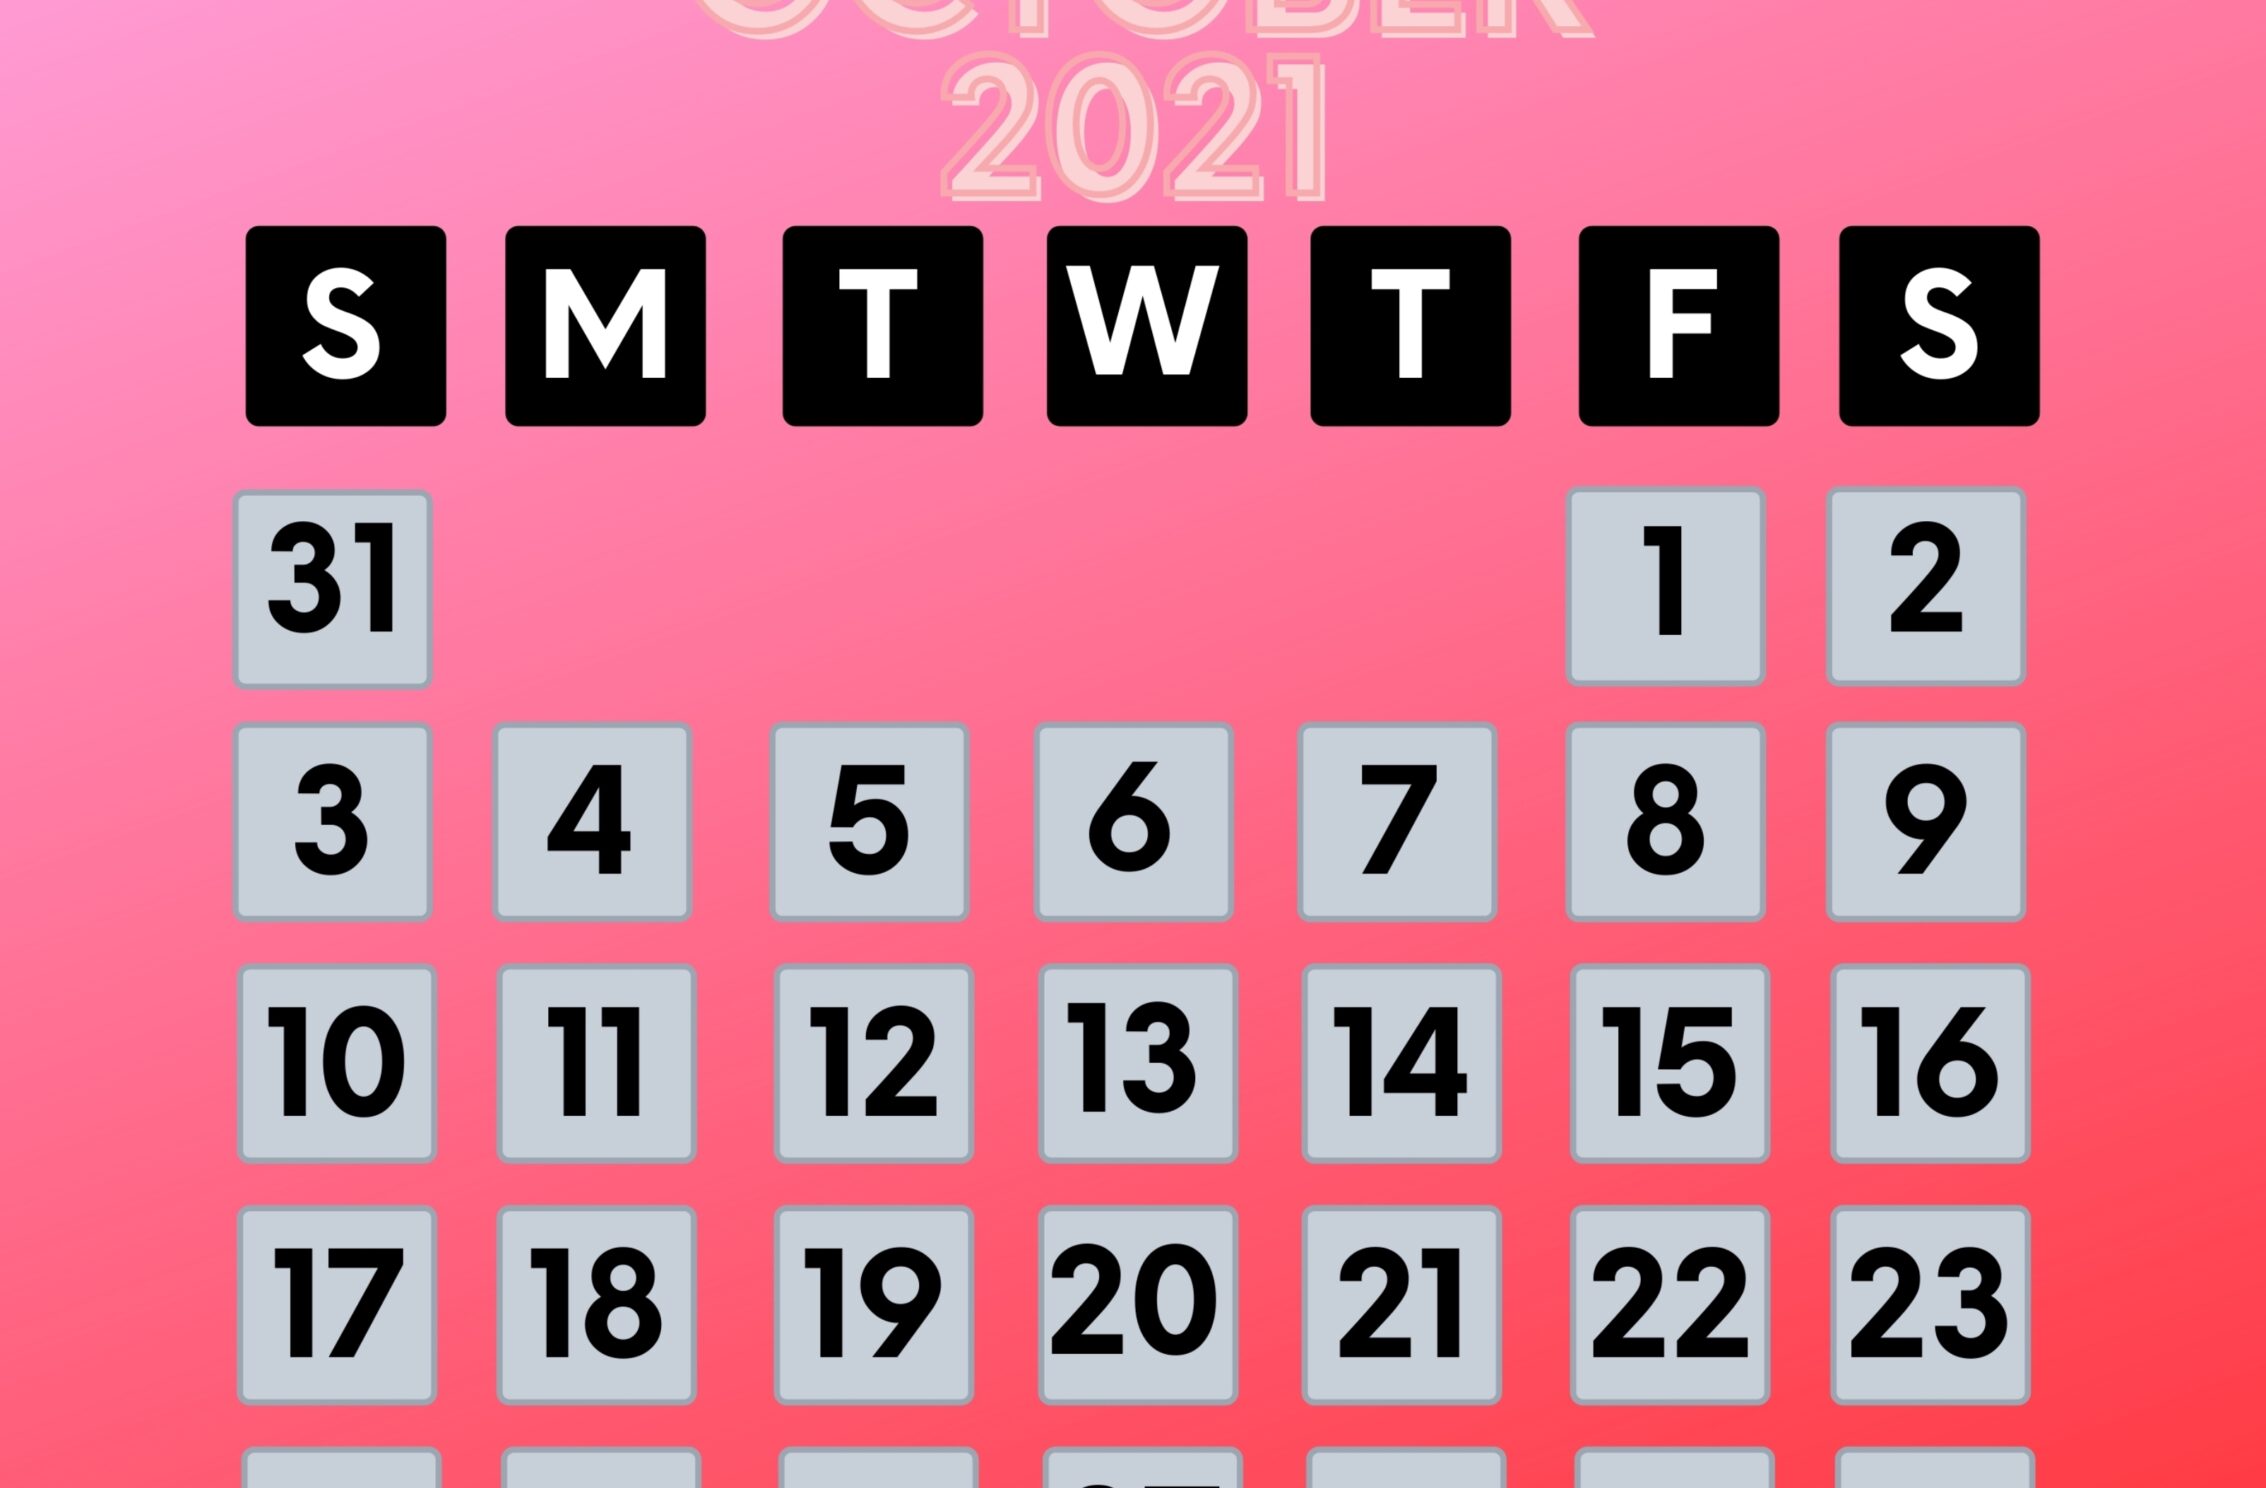 2266x1488 iPad Mini wallpapers October 2021 Calendar iPad Wallpaper 2266x1488 pixels resolution